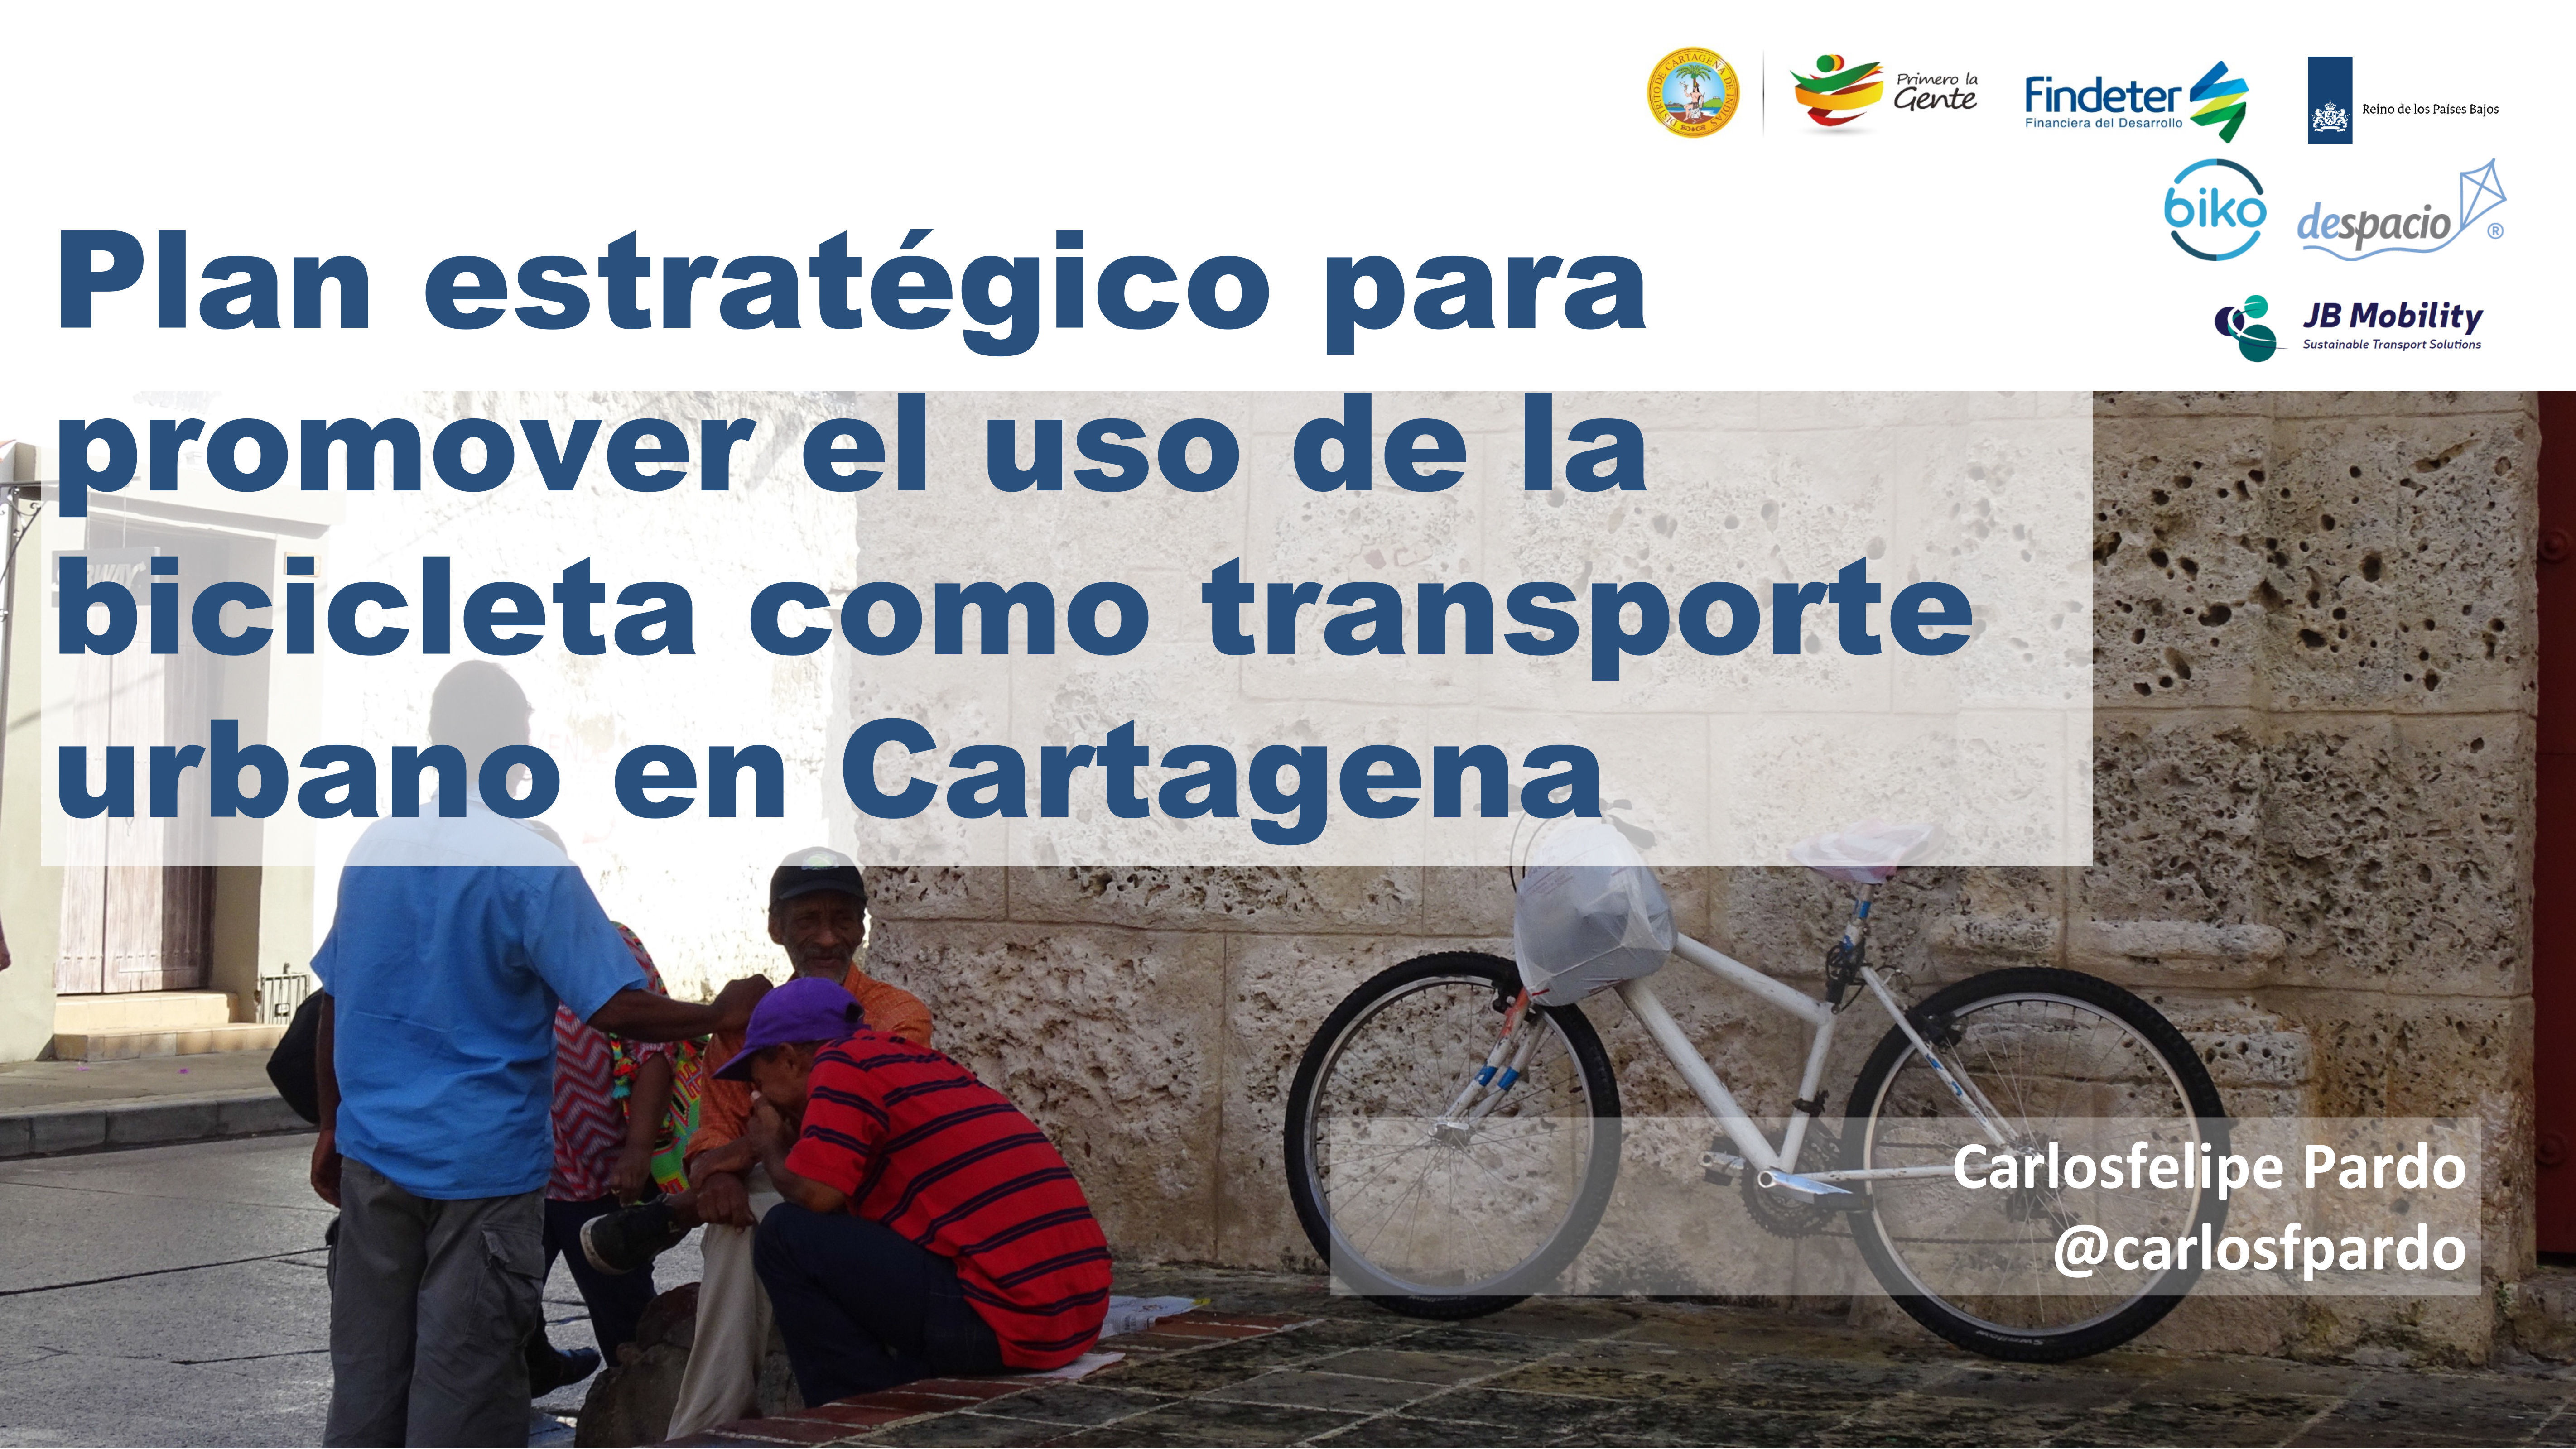 Plan estratégico para promover el uso de la bicicleta como transporte en Cartagena